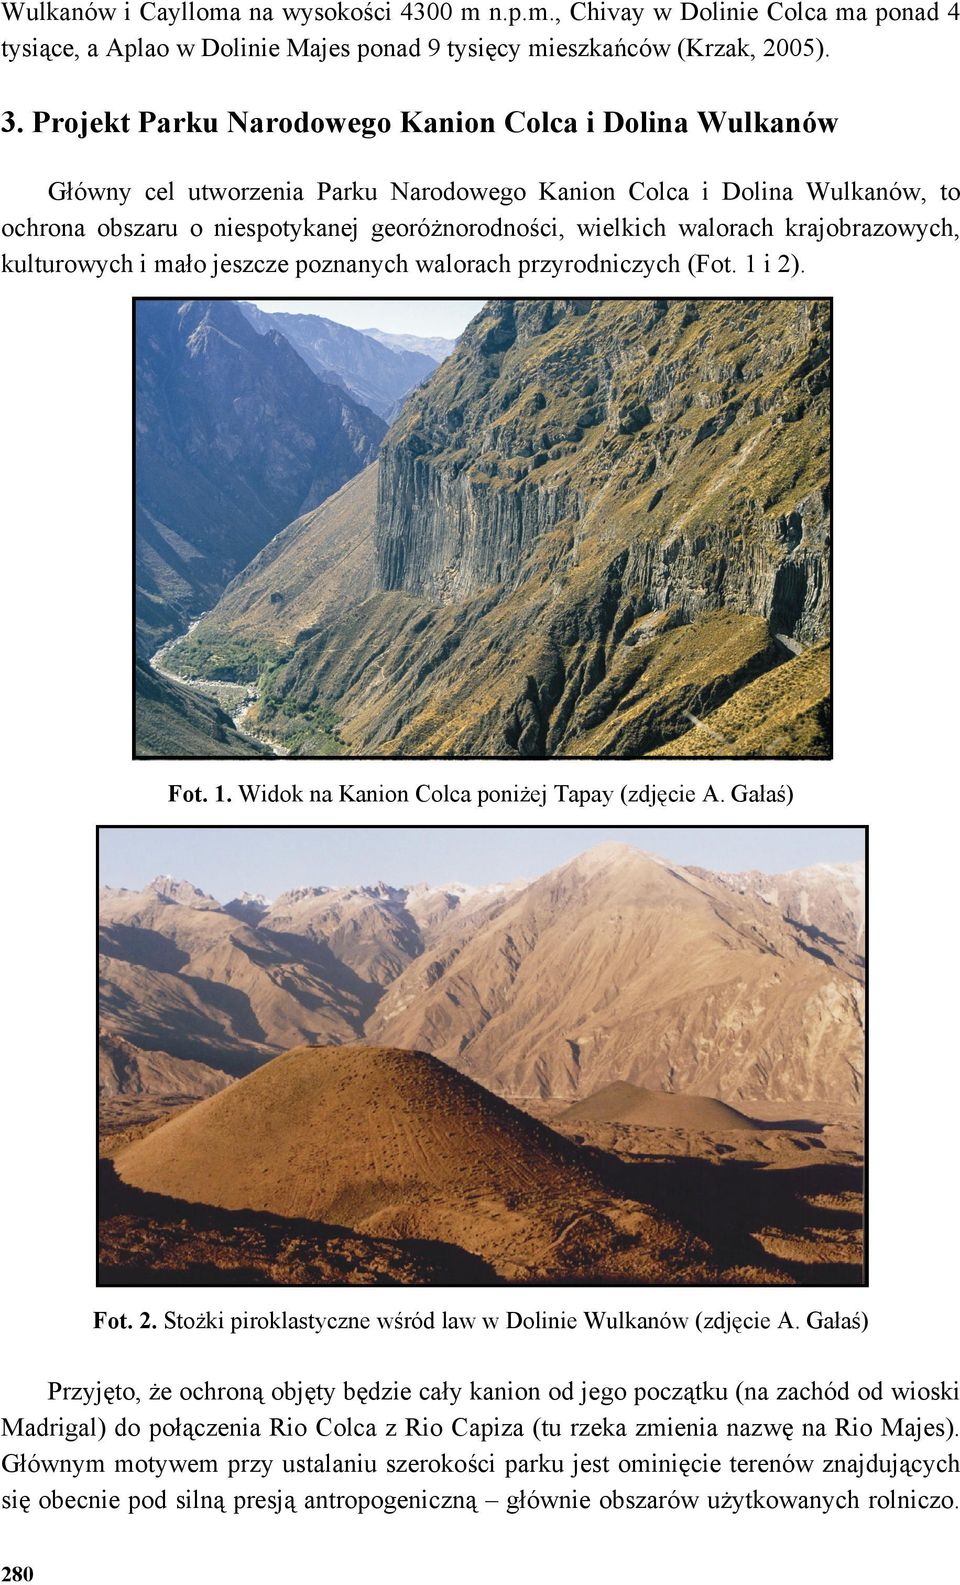 krajobrazowych, kulturowych i mało jeszcze poznanych walorach przyrodniczych (Fot. 1 i 2). Fot. 1. Widok na Kanion Colca poniżej Tapay (zdjęcie A. Gałaś) Fot. 2. Stożki piroklastyczne wśród law w Dolinie Wulkanów (zdjęcie A.